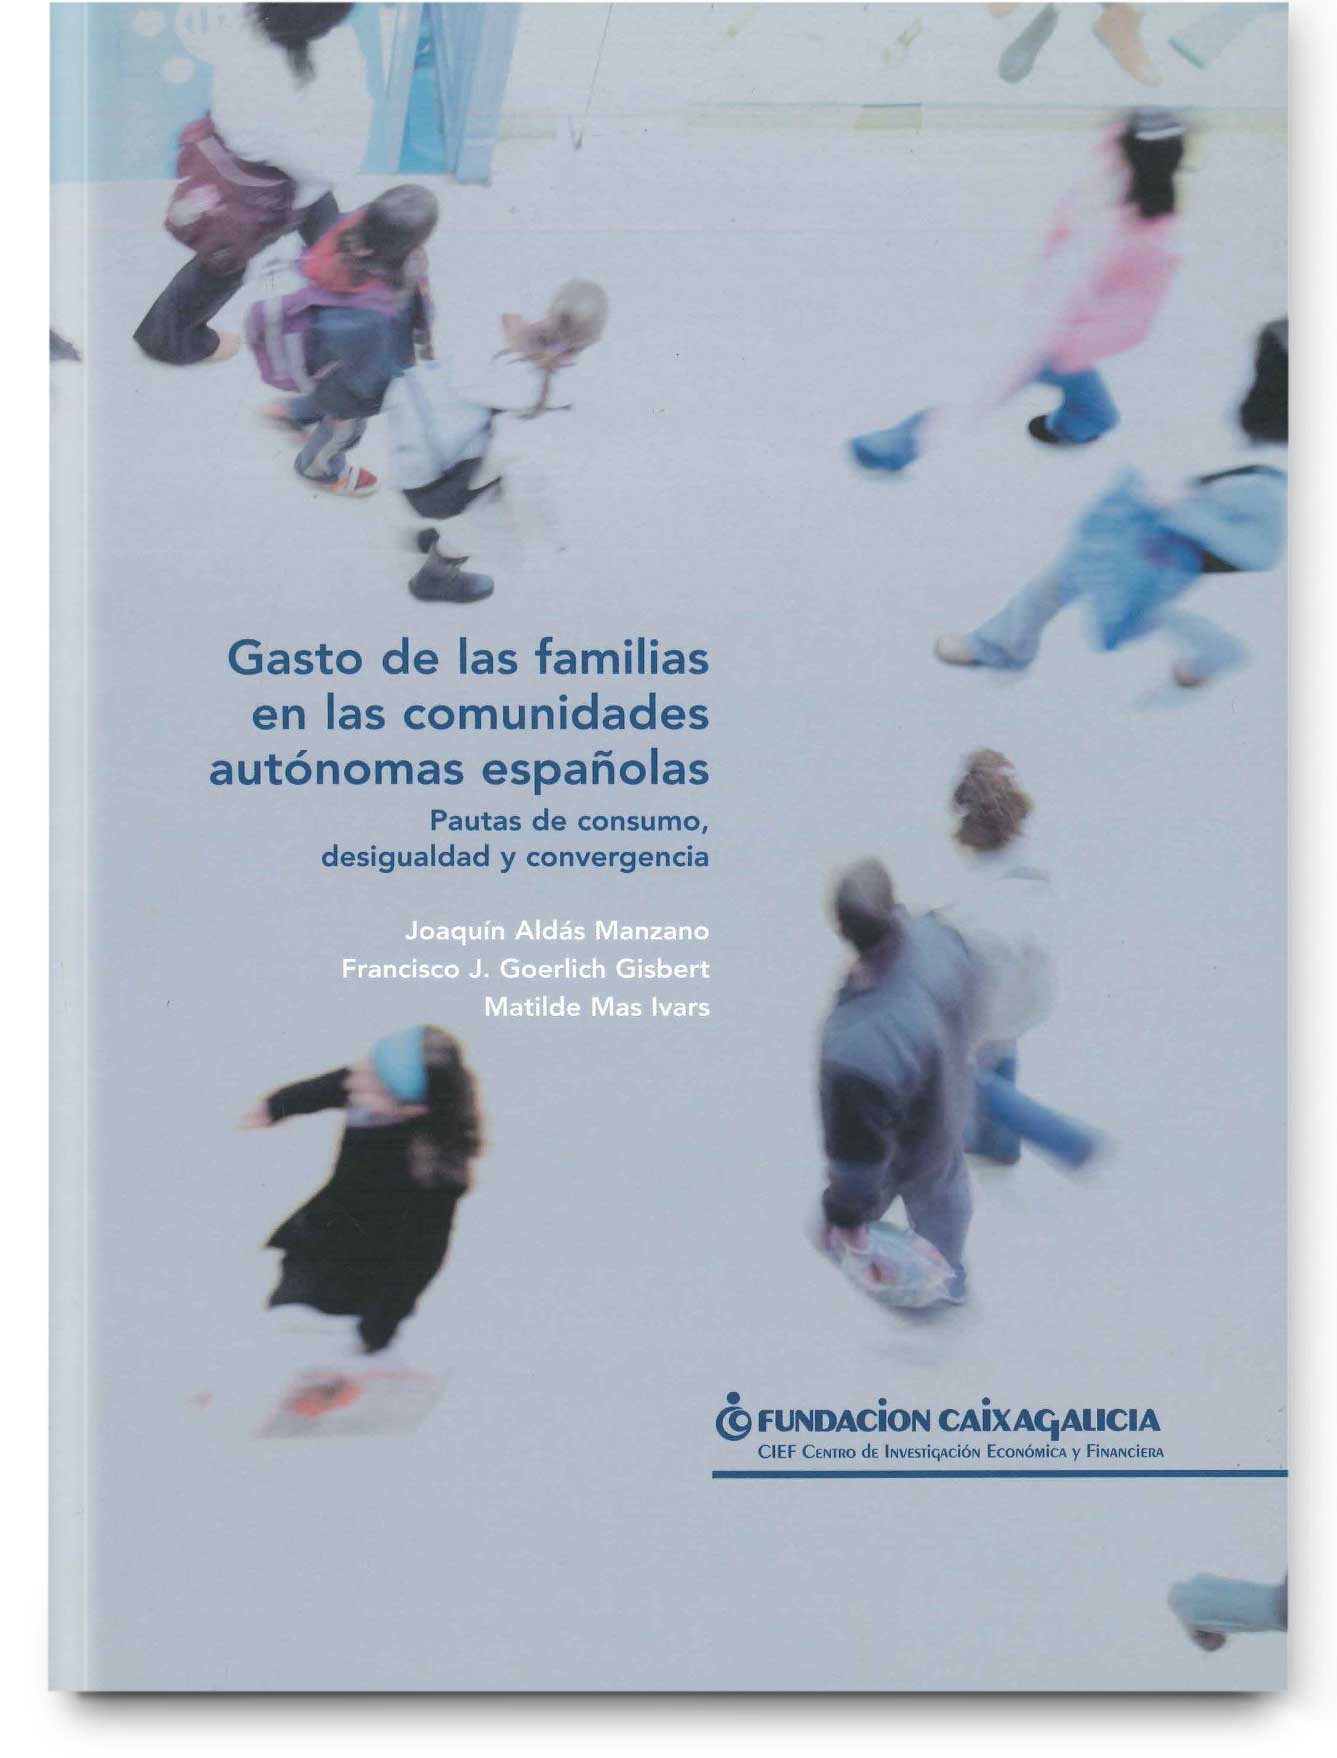 Gasto de las familias en las comunidades autónomas españolas. Pautas de consumo, desigualdad y convergencia